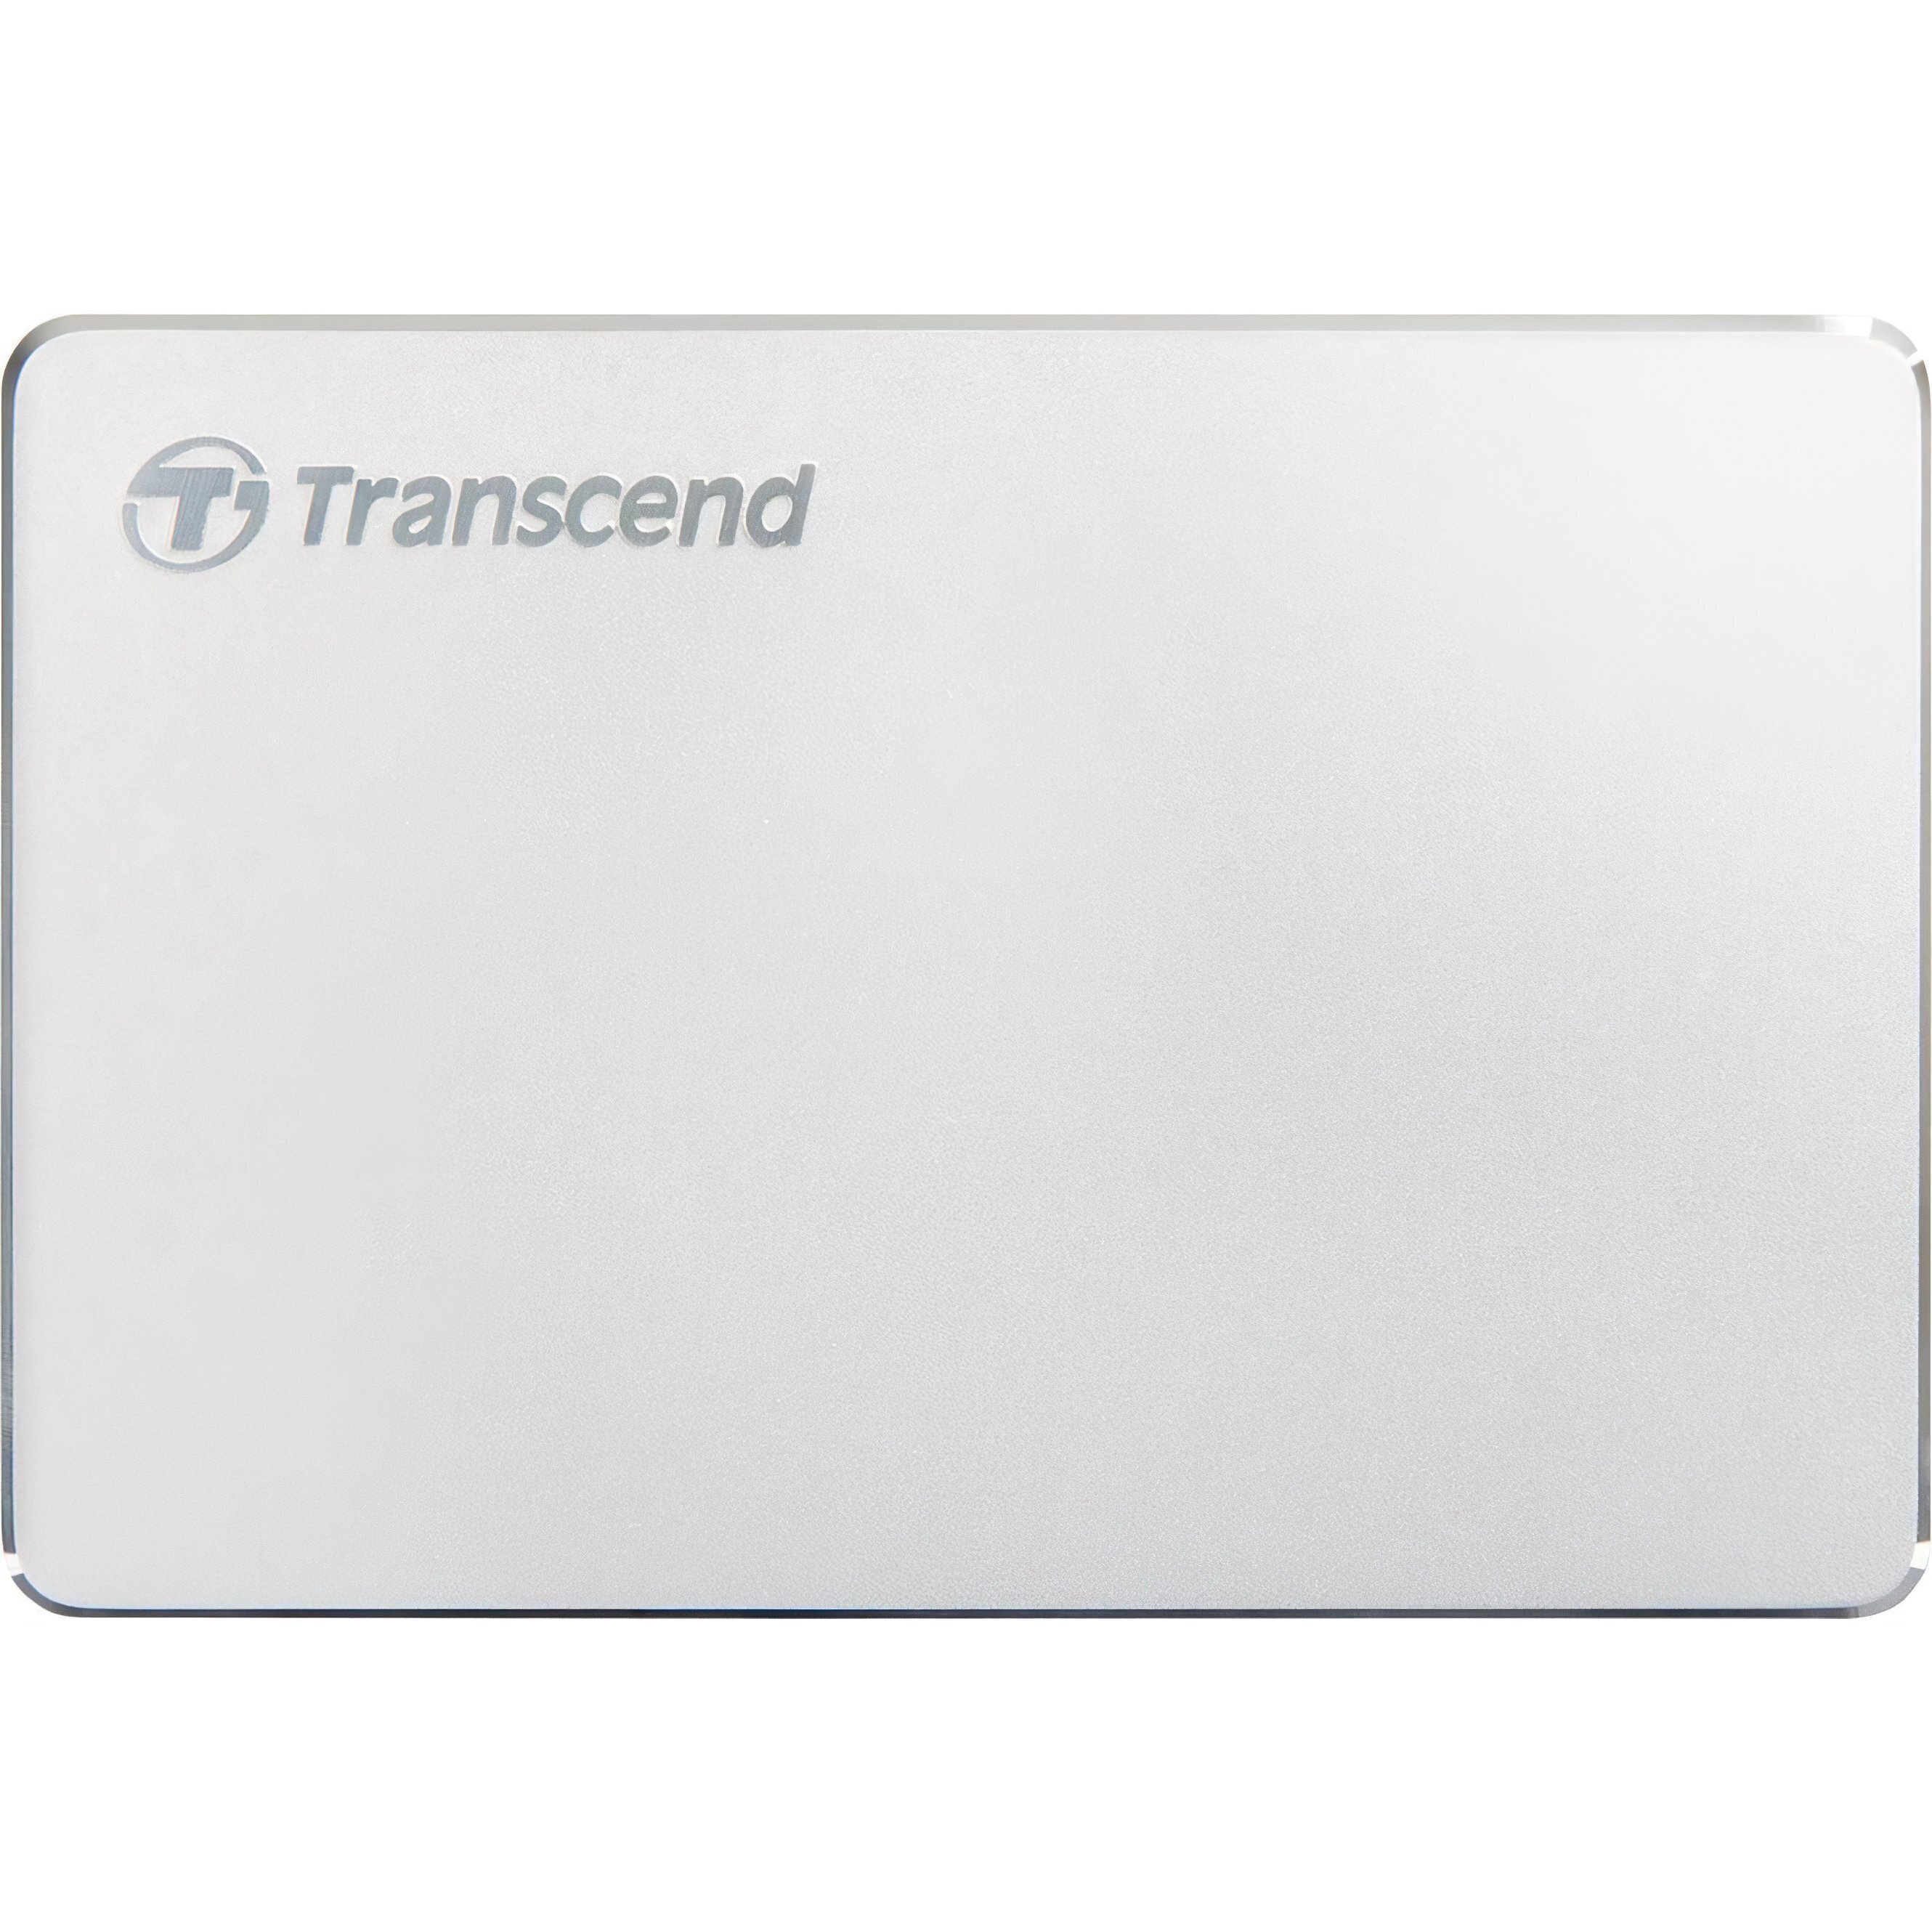 Жесткий диск TRANSCEND StoreJet 2.5 USB 3.1/Type-C 2TB MC Silver (TS2TSJ25C3S) фото 1